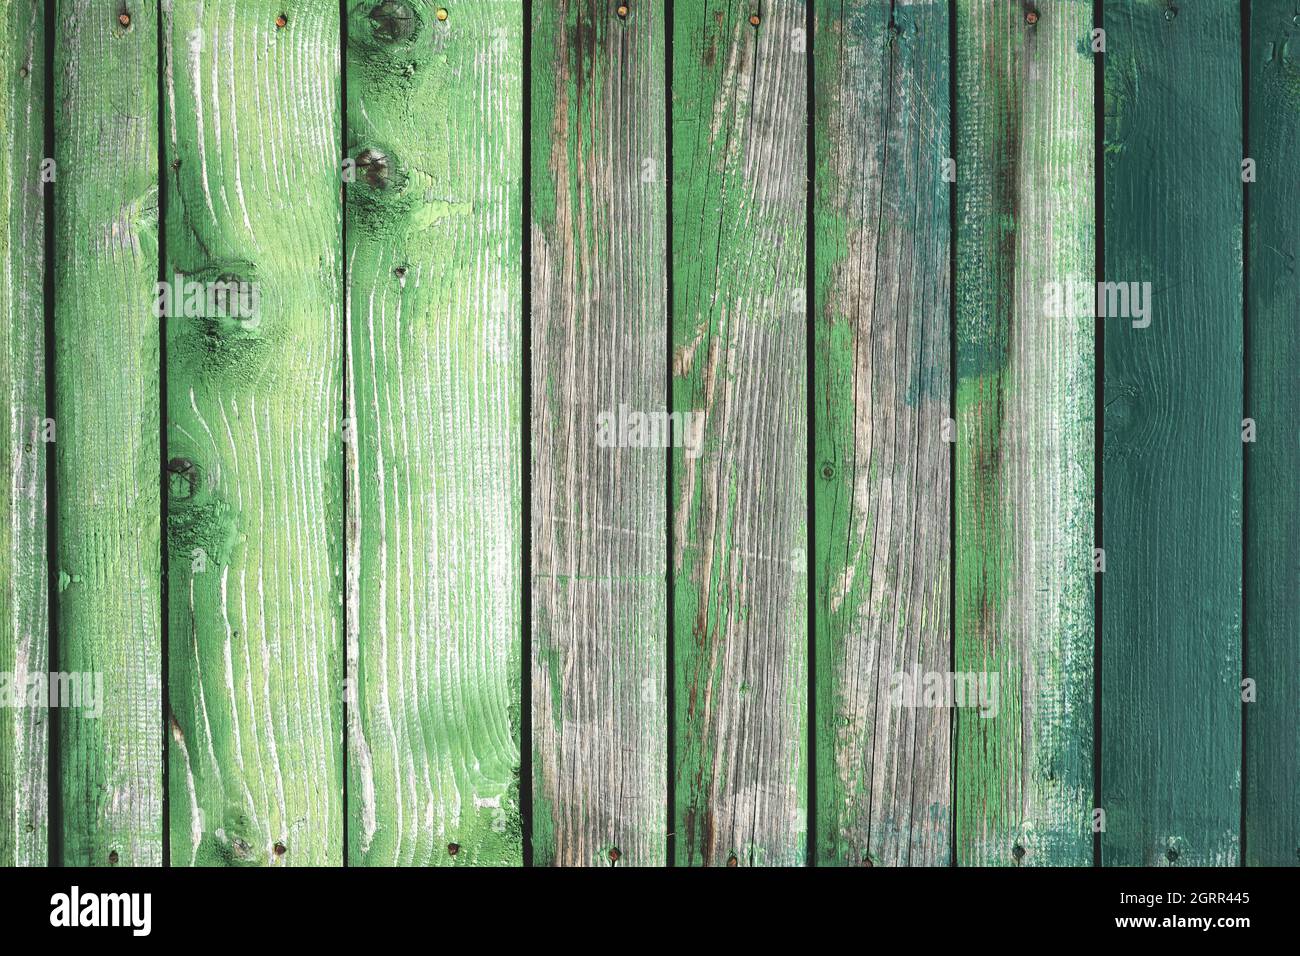 Alte hölzerne Grunge-Platte in verschiedenen Grüntönen lackiert. Natürliche Textur. Kann wie ein Naturhintergrund verwendet werden Stockfoto